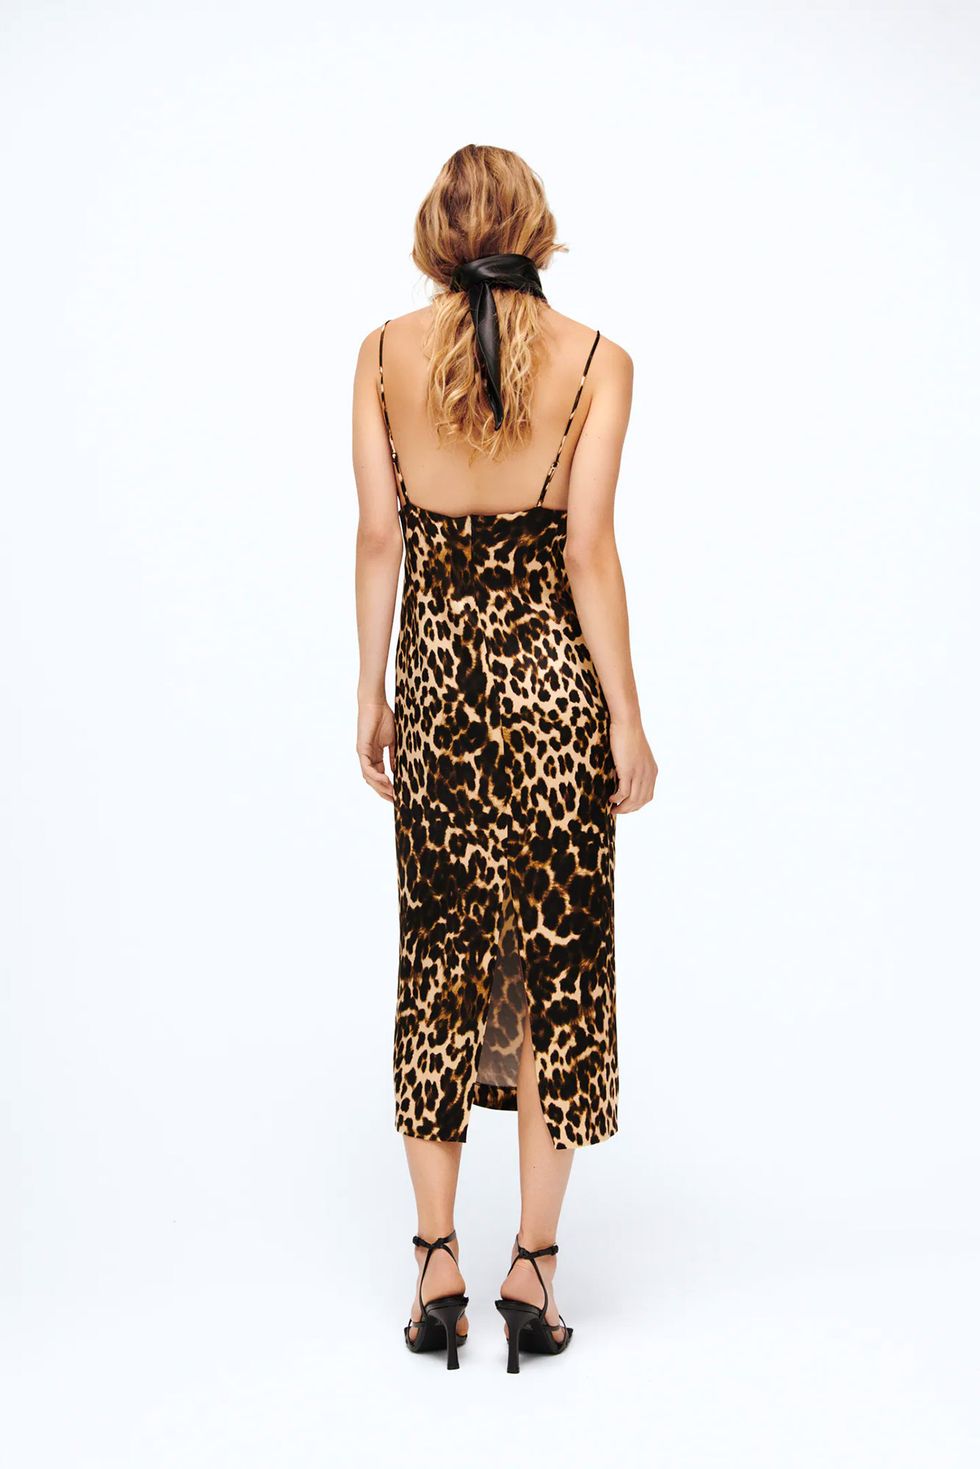 Establecimiento tarde Vislumbrar Todo el 'staff' de Zara ha reservado este vestido de leopardo